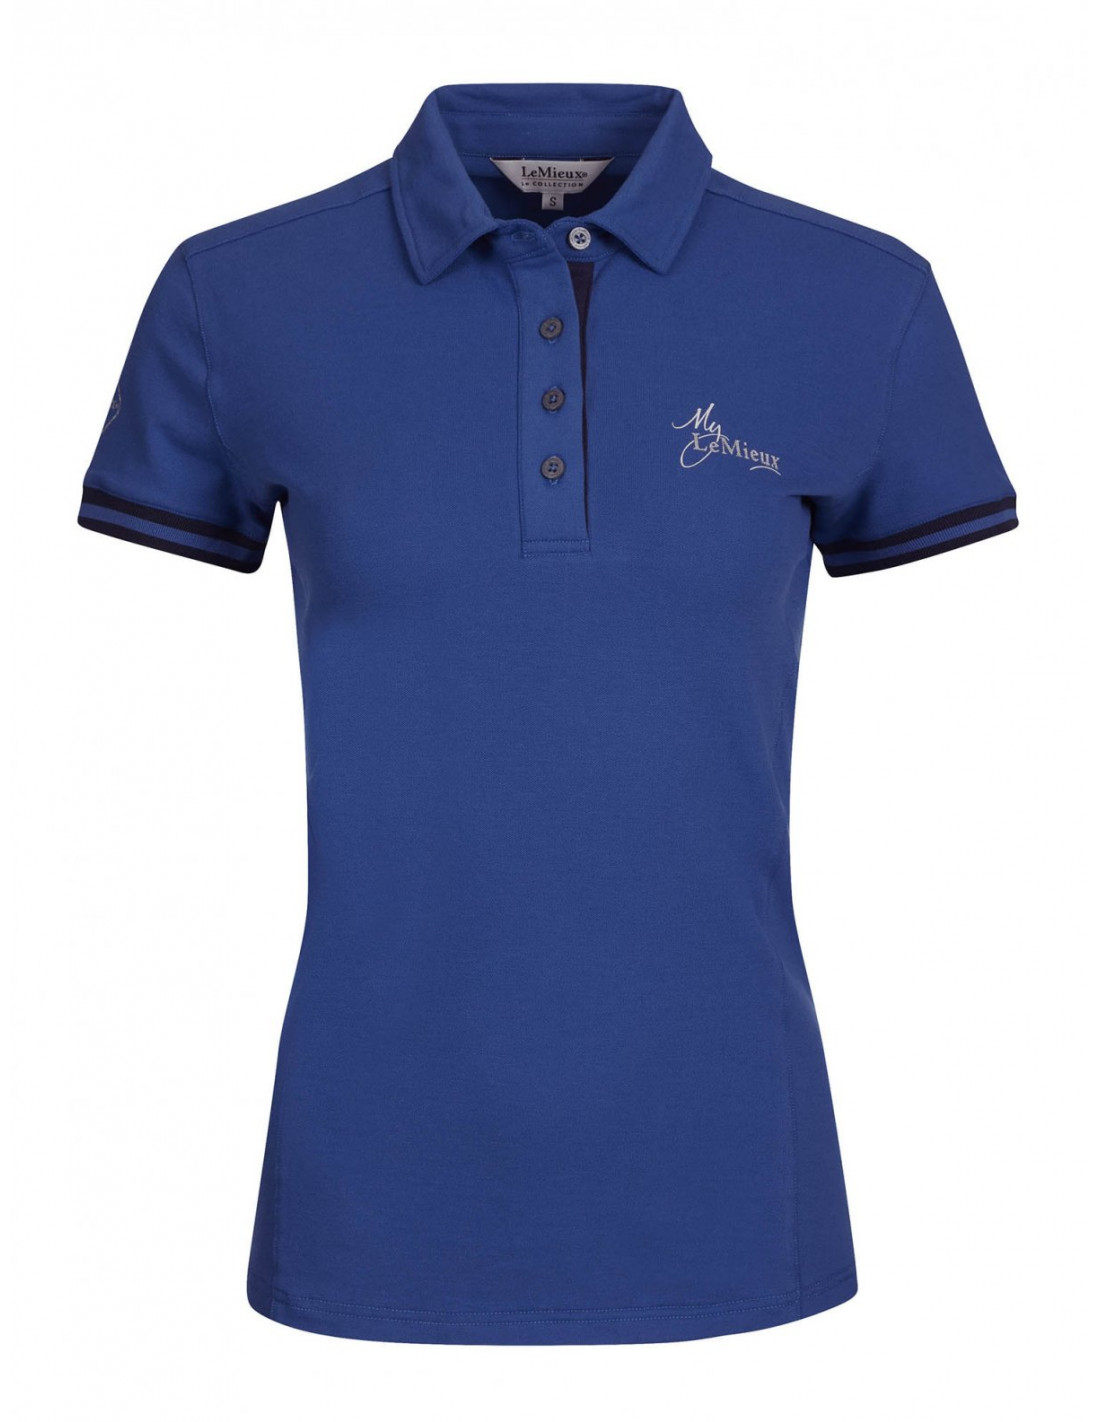 LeMieux Polo Shirt Size XS color Benetton Blue